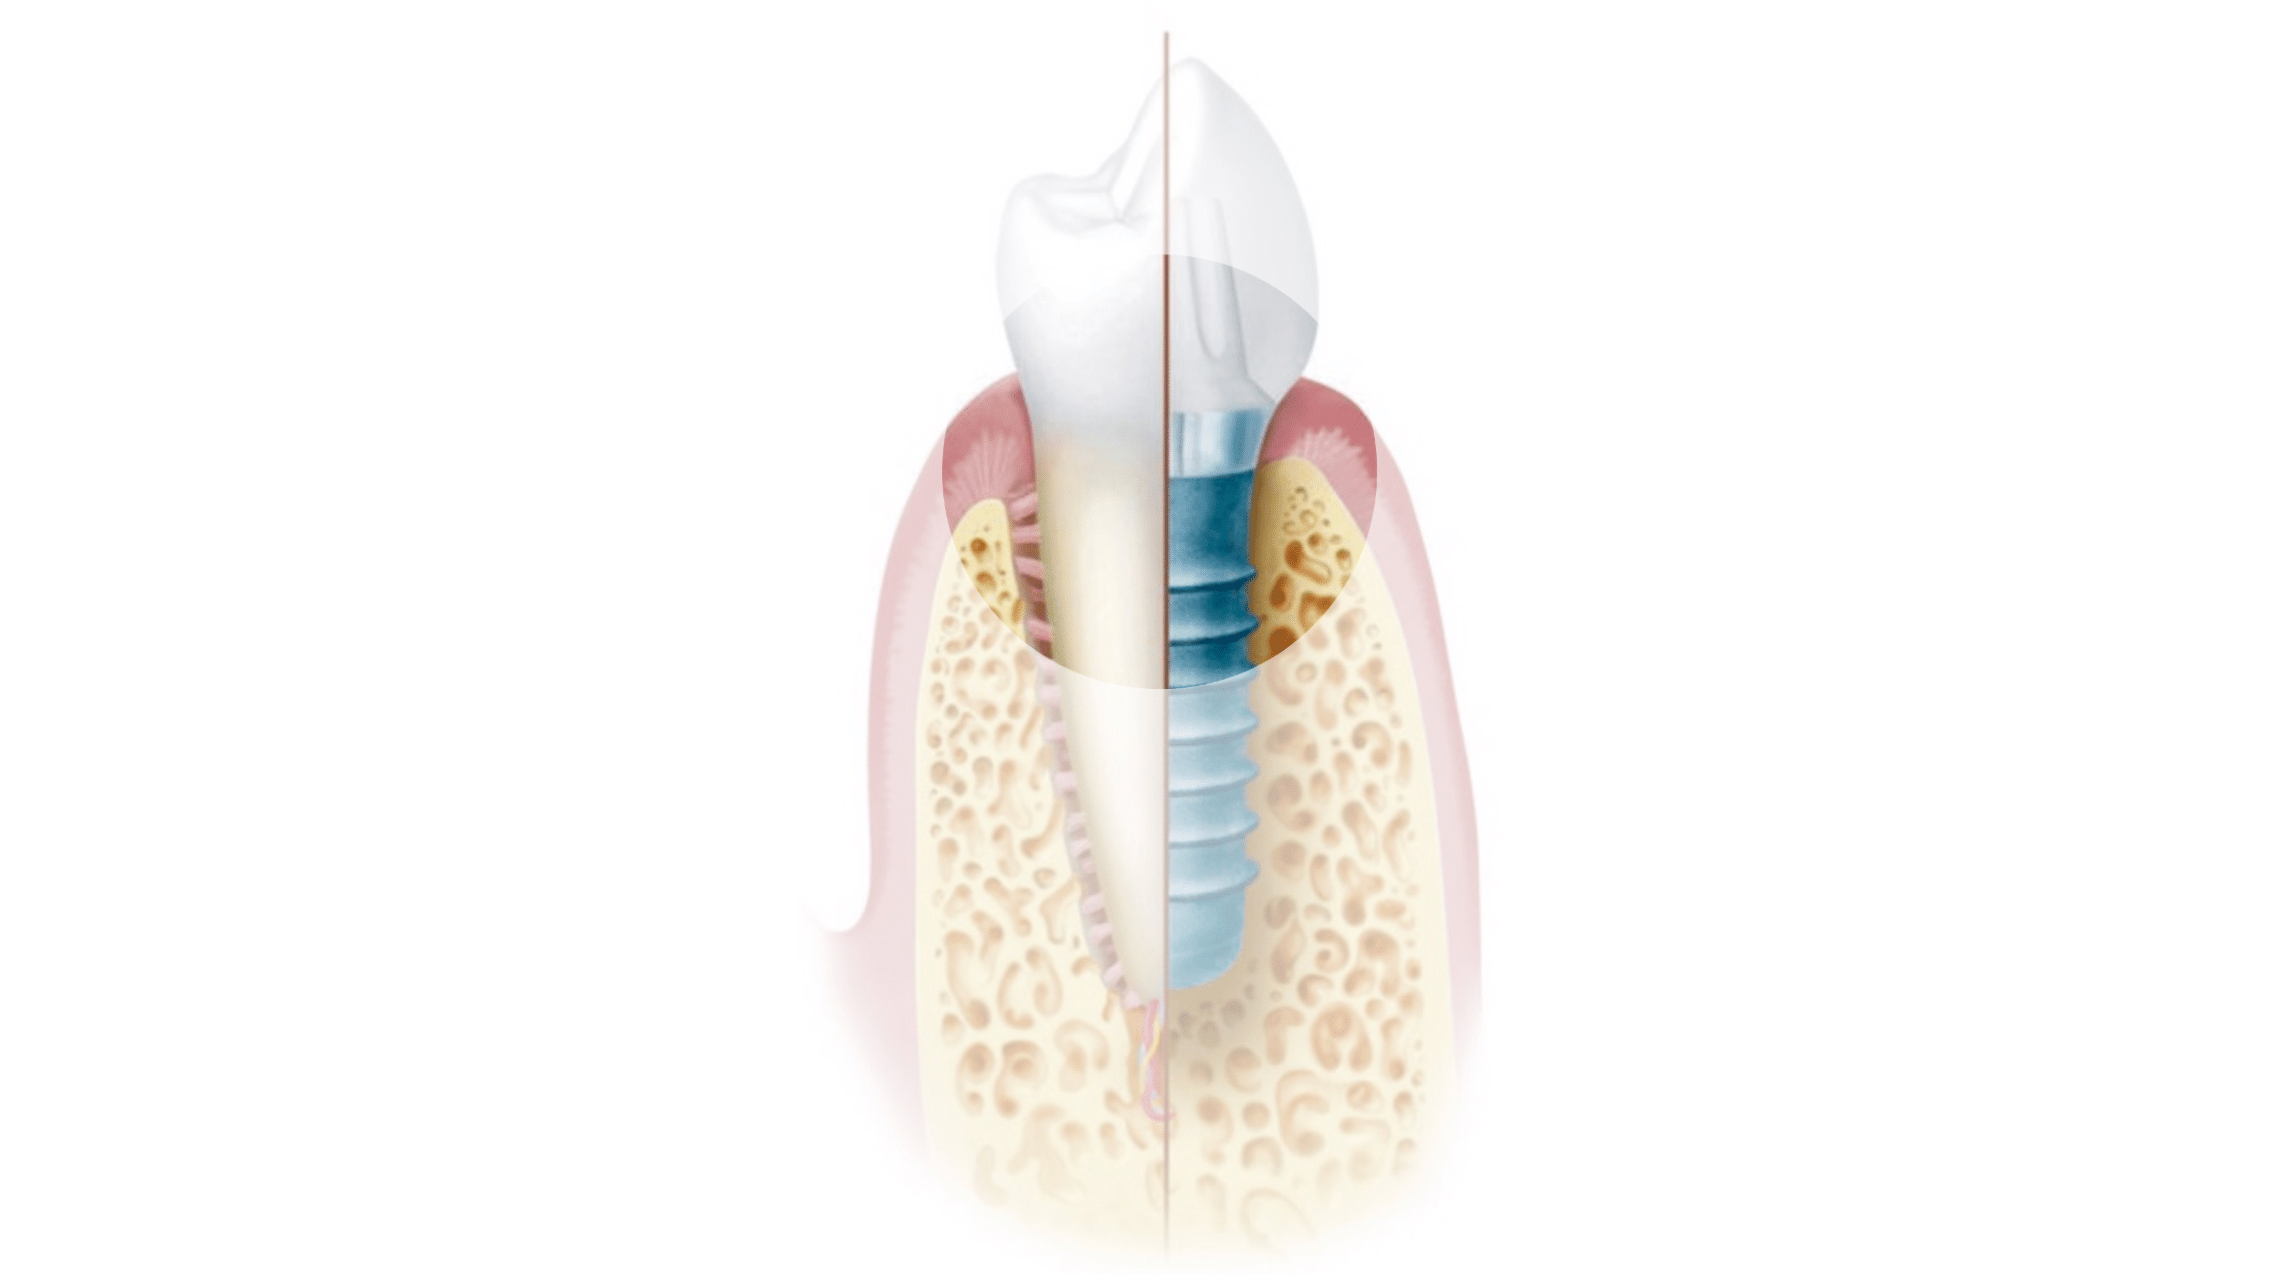 Schaubild welches zeigt wie ein Zahnimplantat aussieht